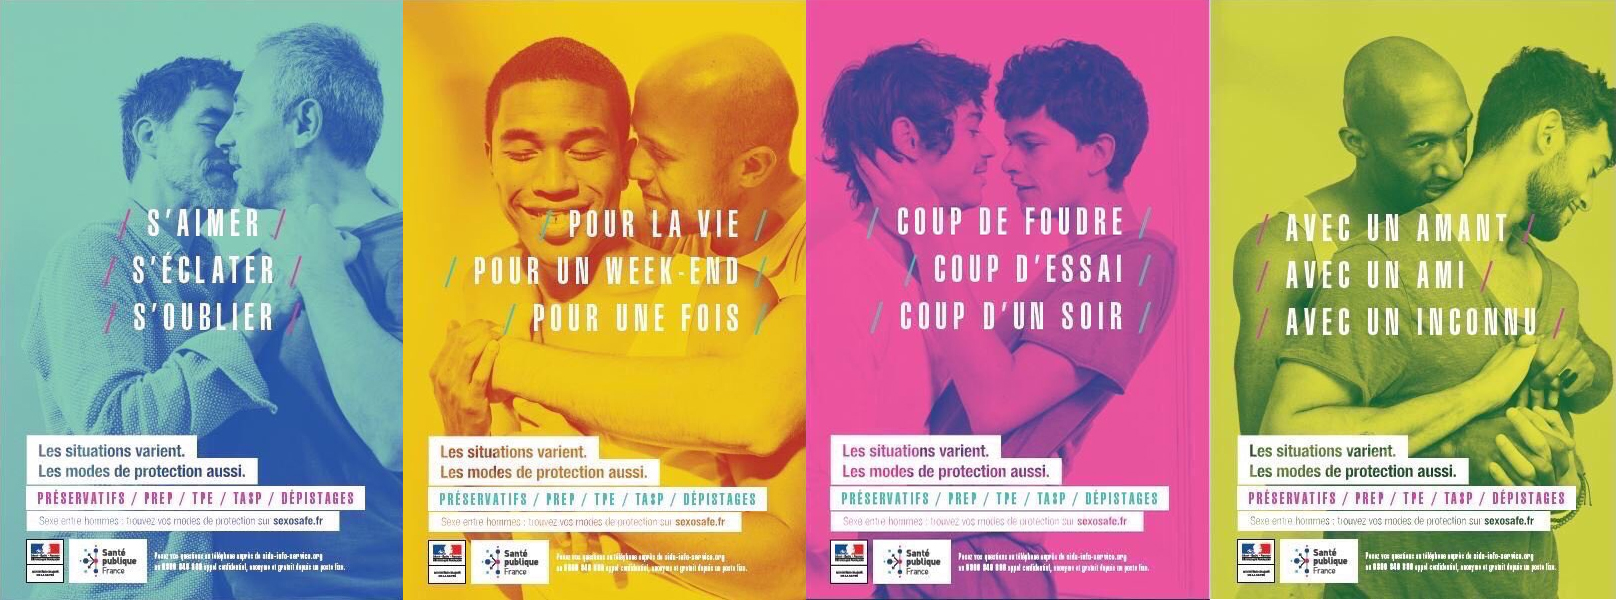 La polémique des affiches de prévention contre le sida